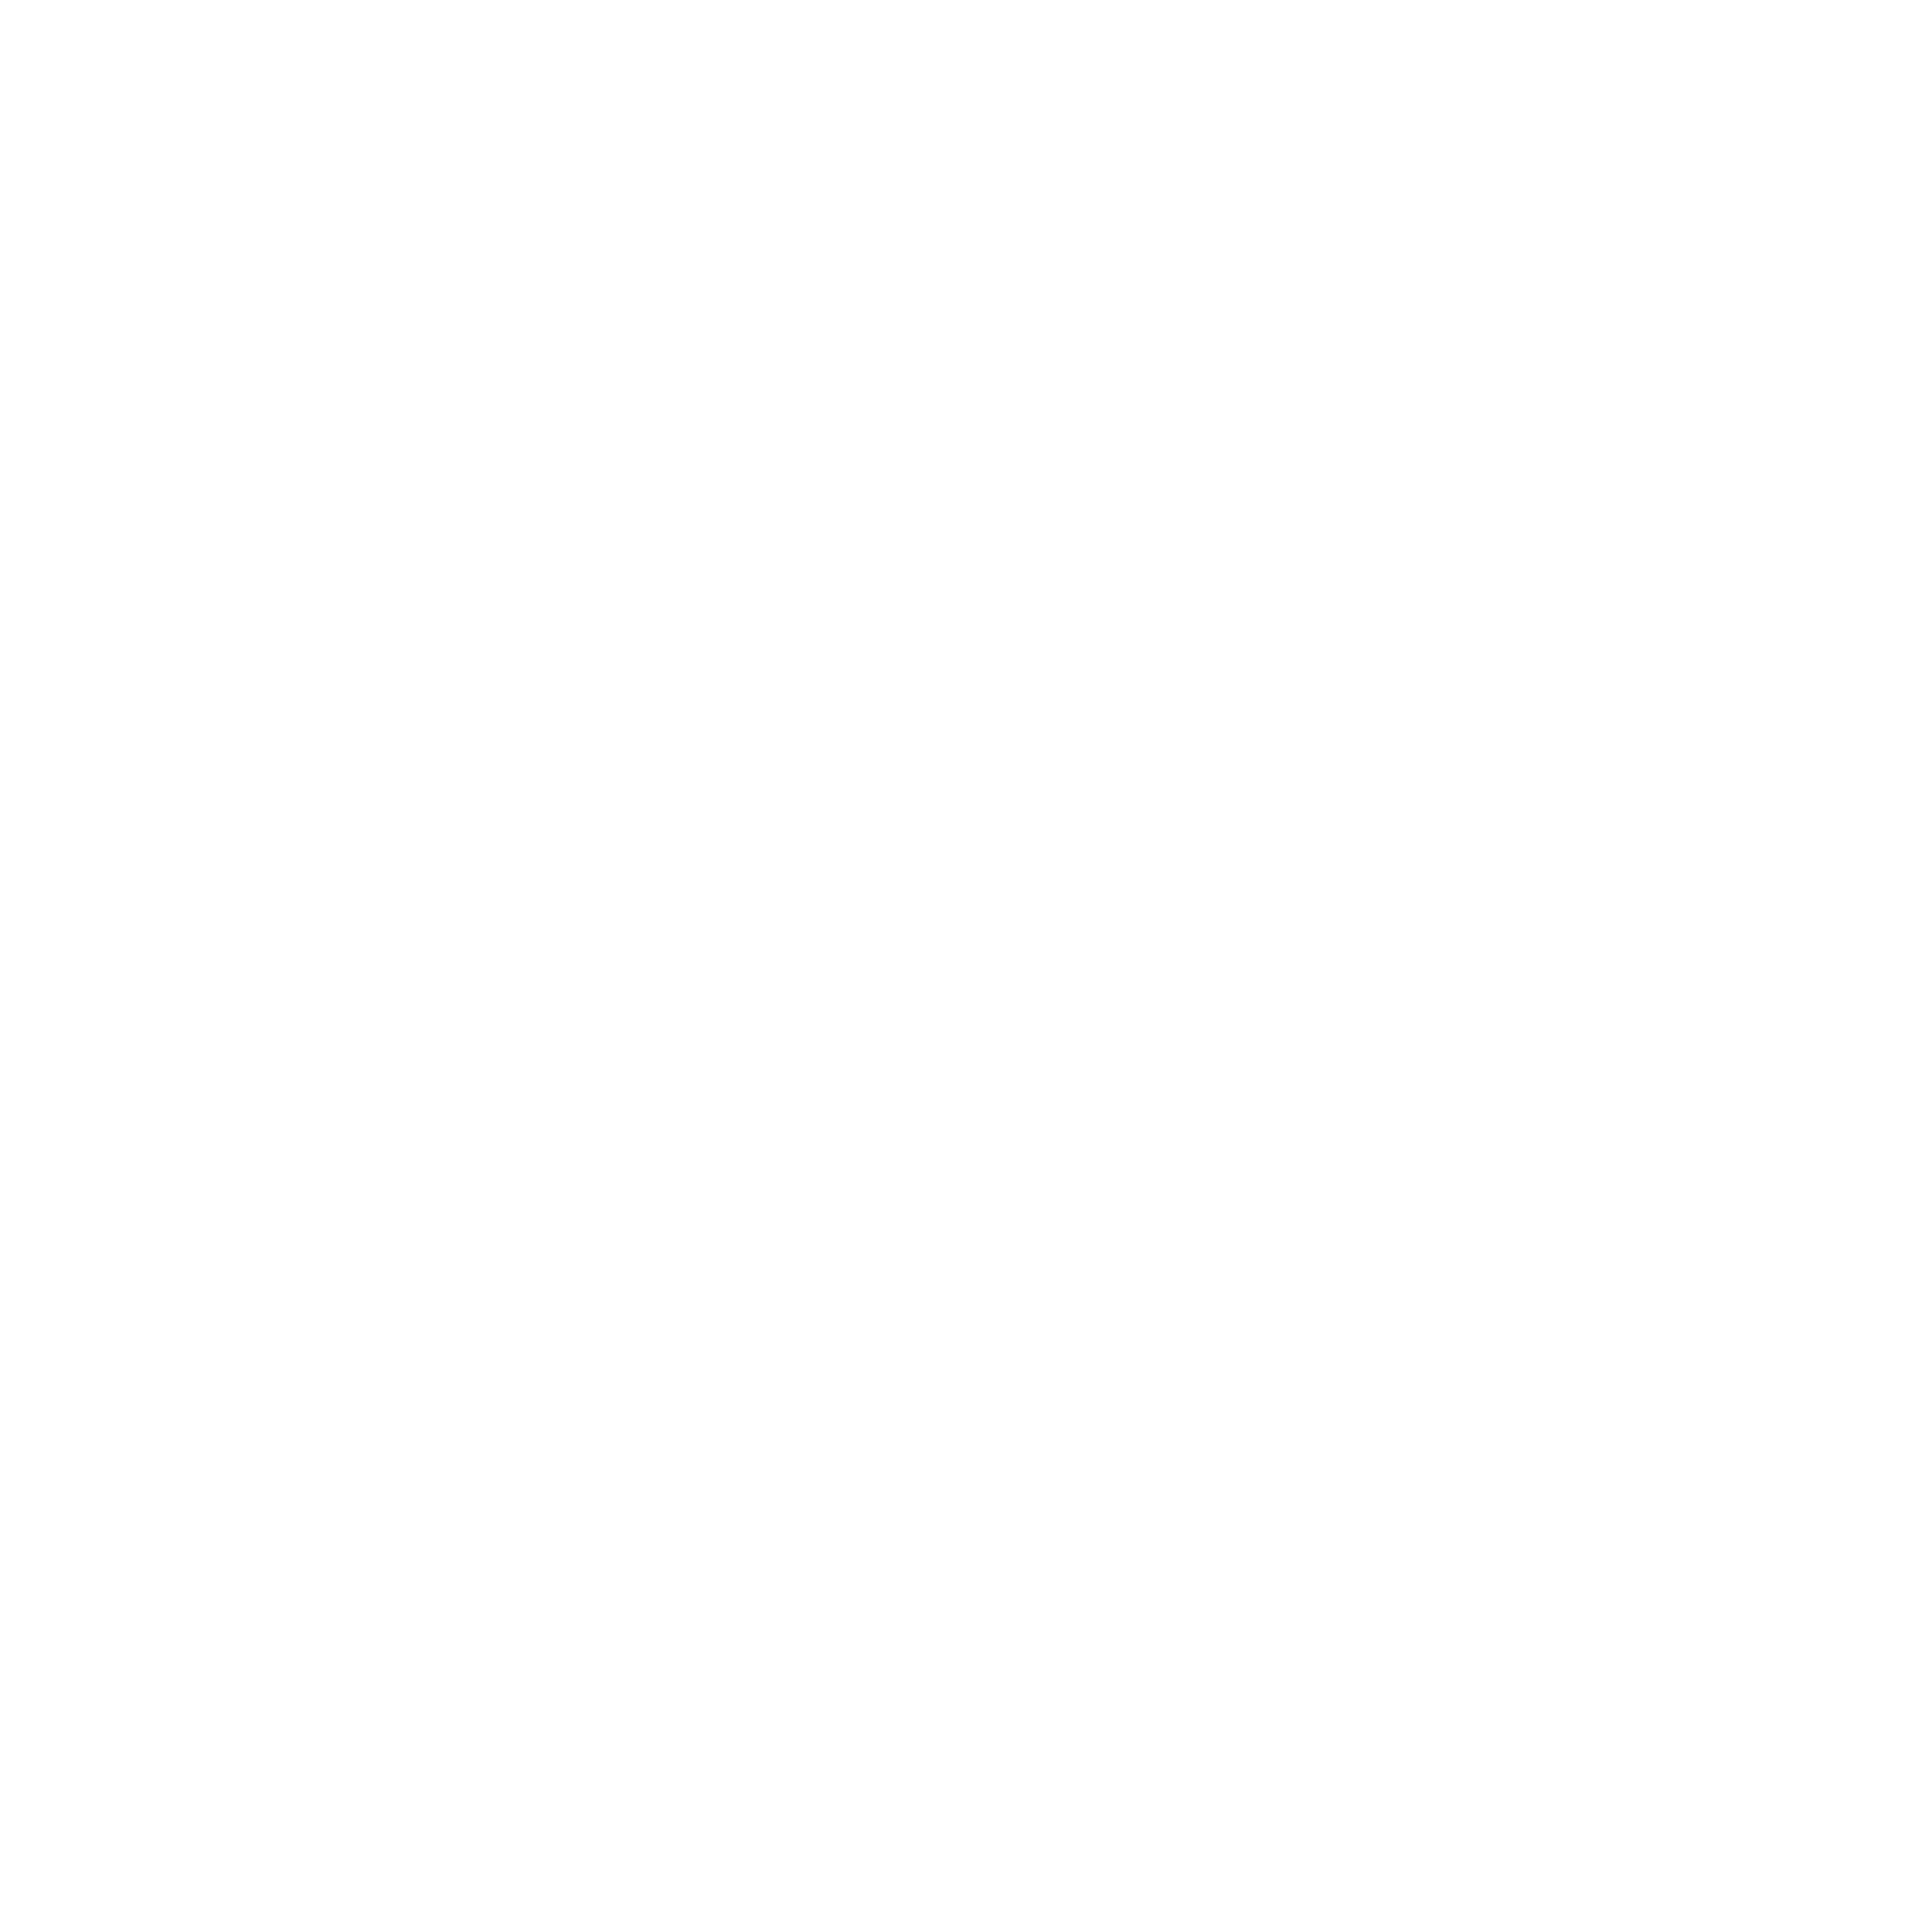 Nomad Bloc